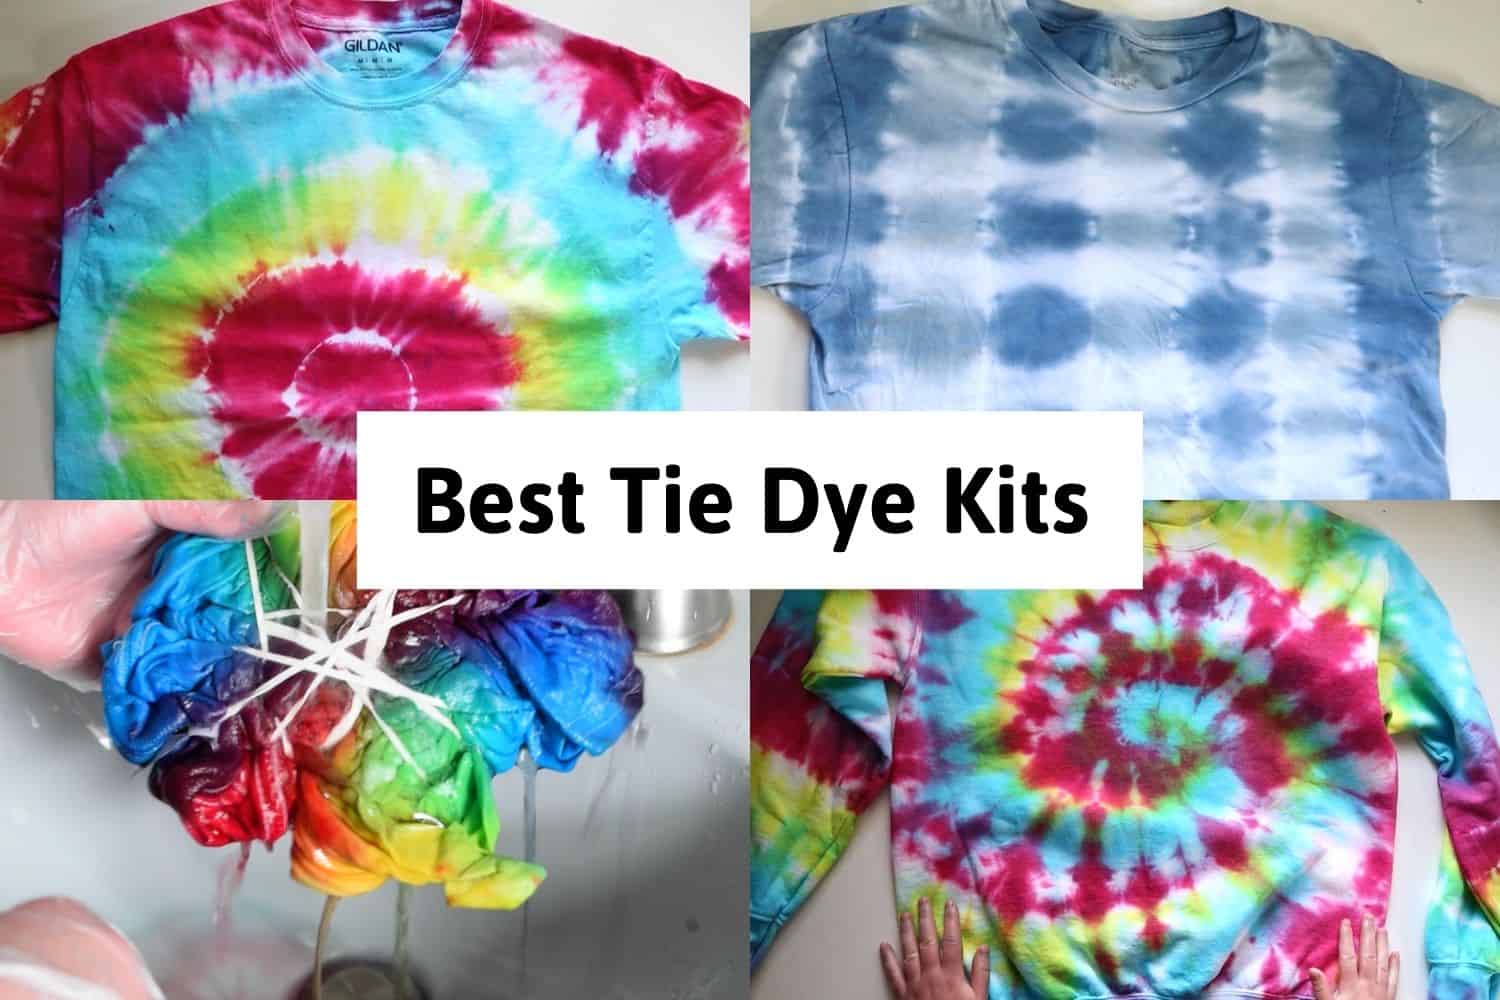 Guantes de Plástico THE TWIDDLERS 204 Piezas Tie-Dye Kit Gran Selección de Tintes con Bandas de Goma Tie Dye Kit para Niños y Adultos